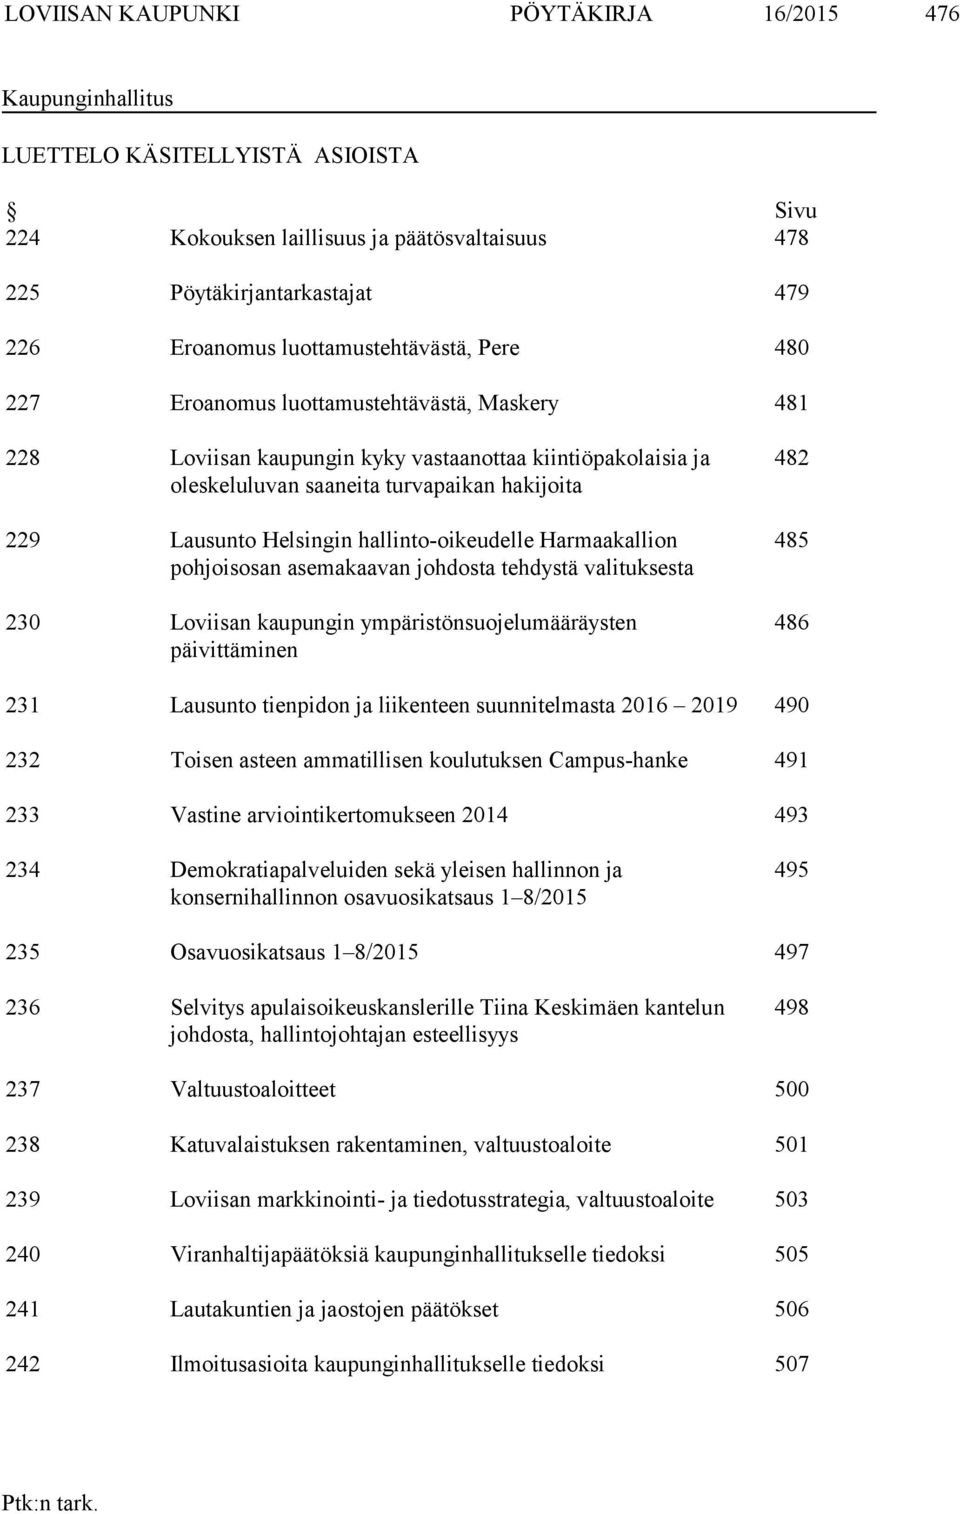 Helsingin hallinto-oikeudelle Harmaakallion pohjoisosan asemakaavan johdosta tehdystä valituksesta 230 Loviisan kaupungin ympäristönsuojelumääräysten päivittäminen 482 485 486 231 Lausunto tienpidon